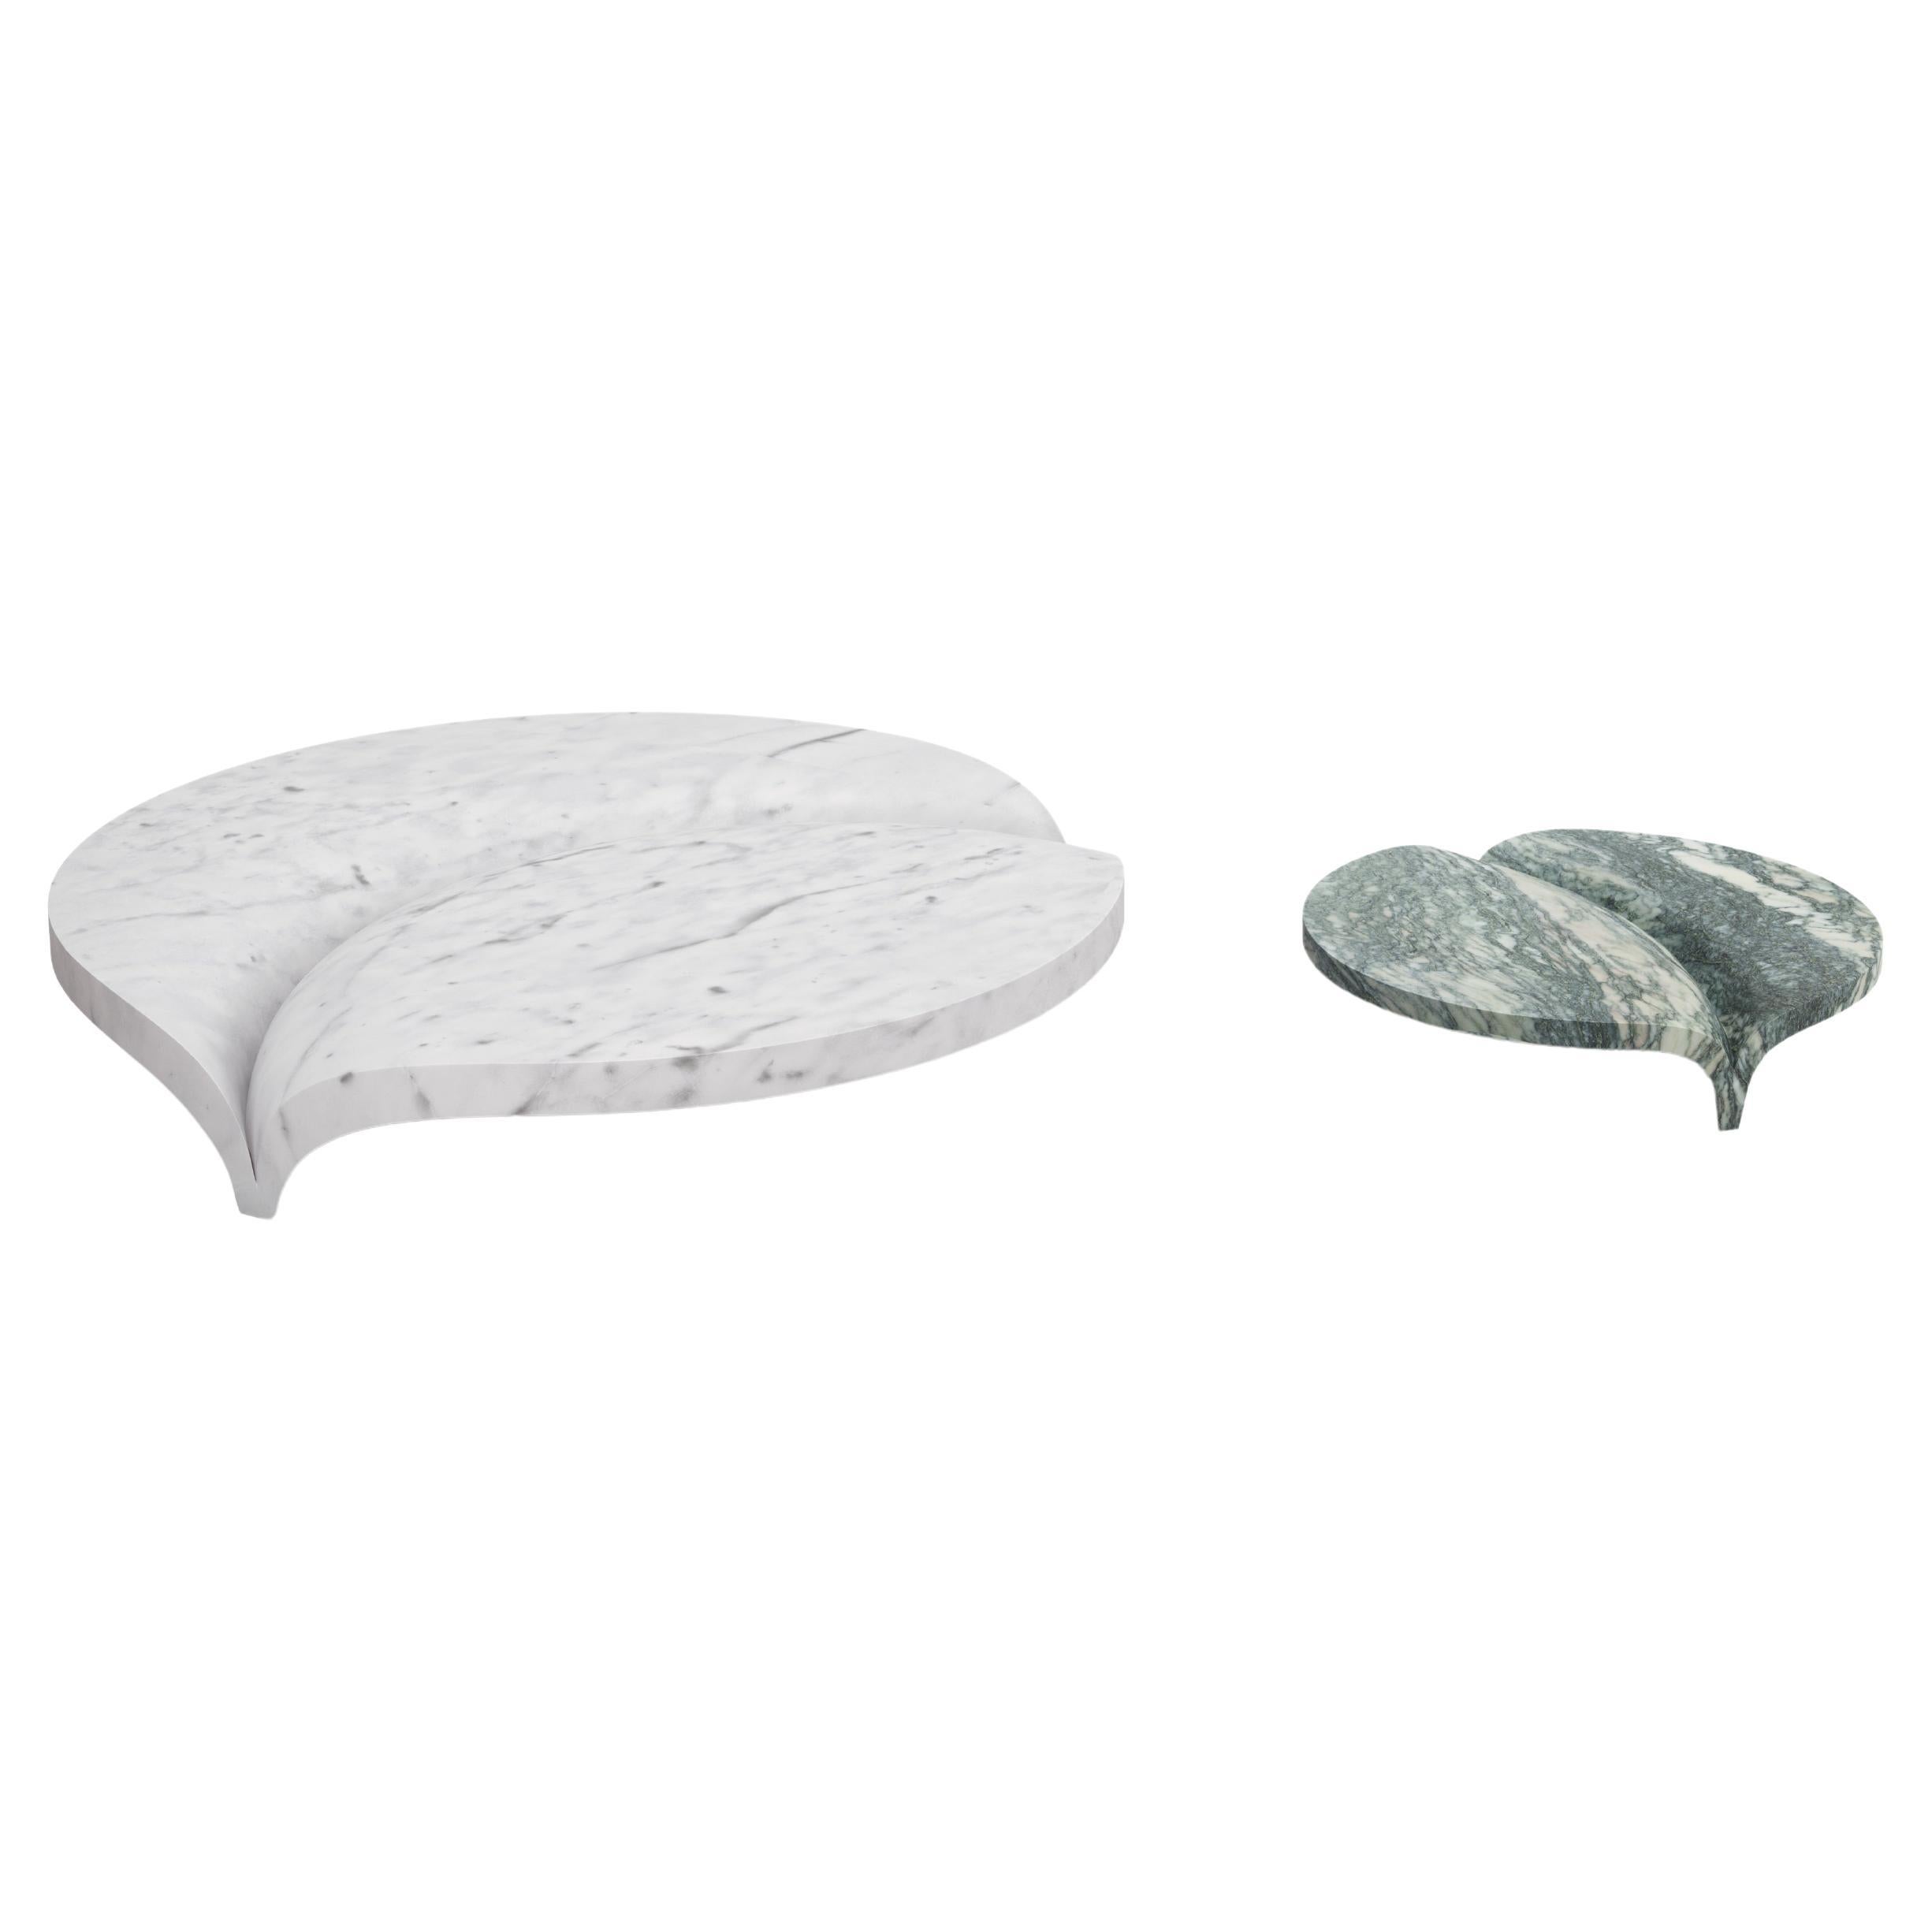 Luna Tisch, zwei Tische in einem, aus Verde Luana und Bianco Carrara Marmor. (Großer Tisch) Ø 150 x 25 cm - 59 x 9,8 in - (Kleiner Tisch) Ø 81,6 x 17 cm - 32,1 6,7. Entworfen von Venelin Kokalov (Revery Architecture Studio).

Luna, inspiriert von